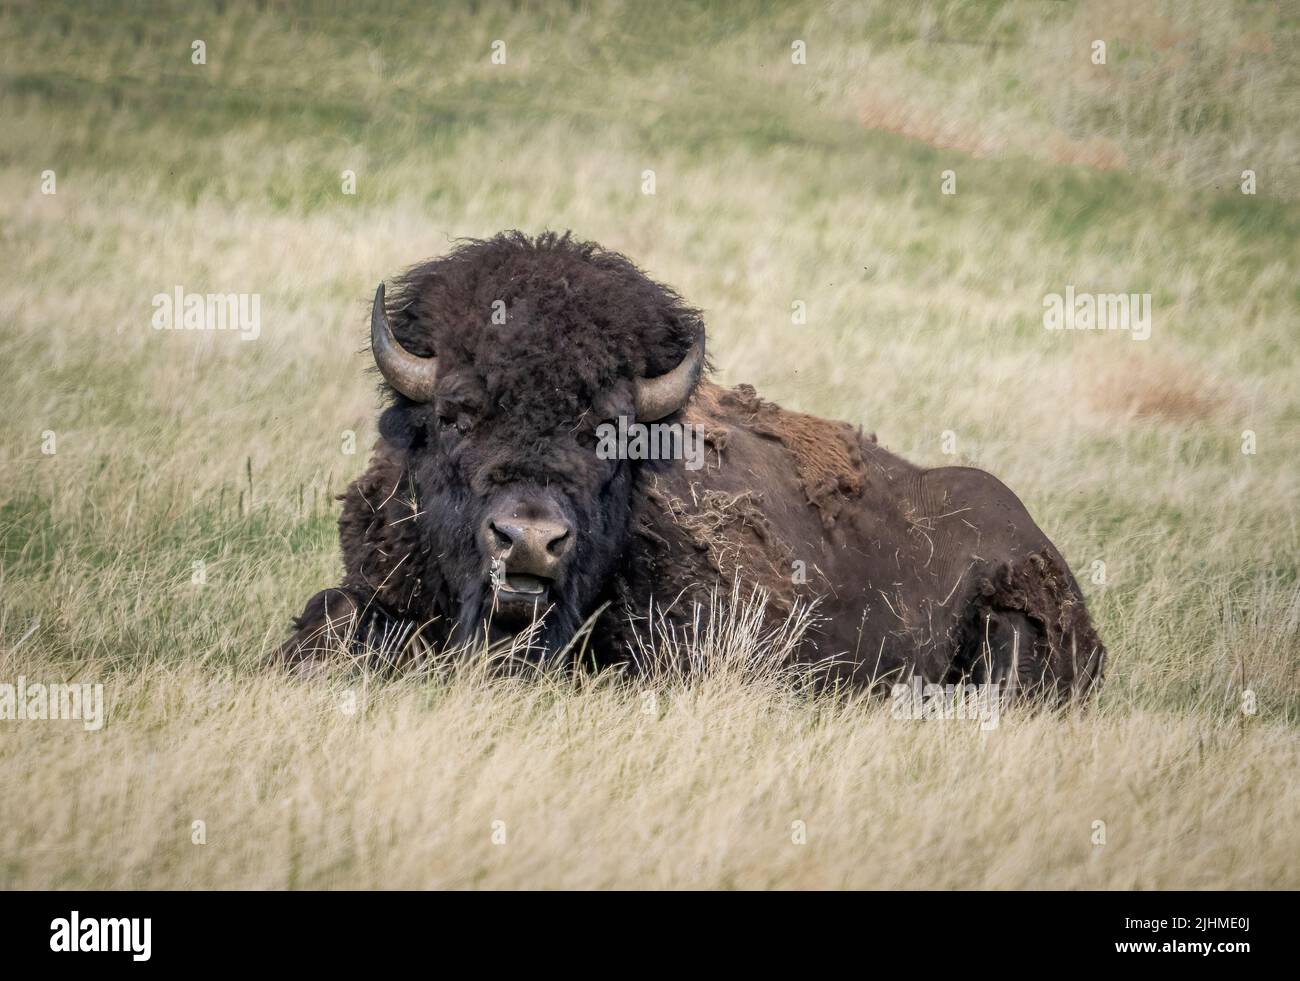 Bisonte o búfalo americano en el Parque Estatal Custer ion Dakota del Sur EE.UU Foto de stock